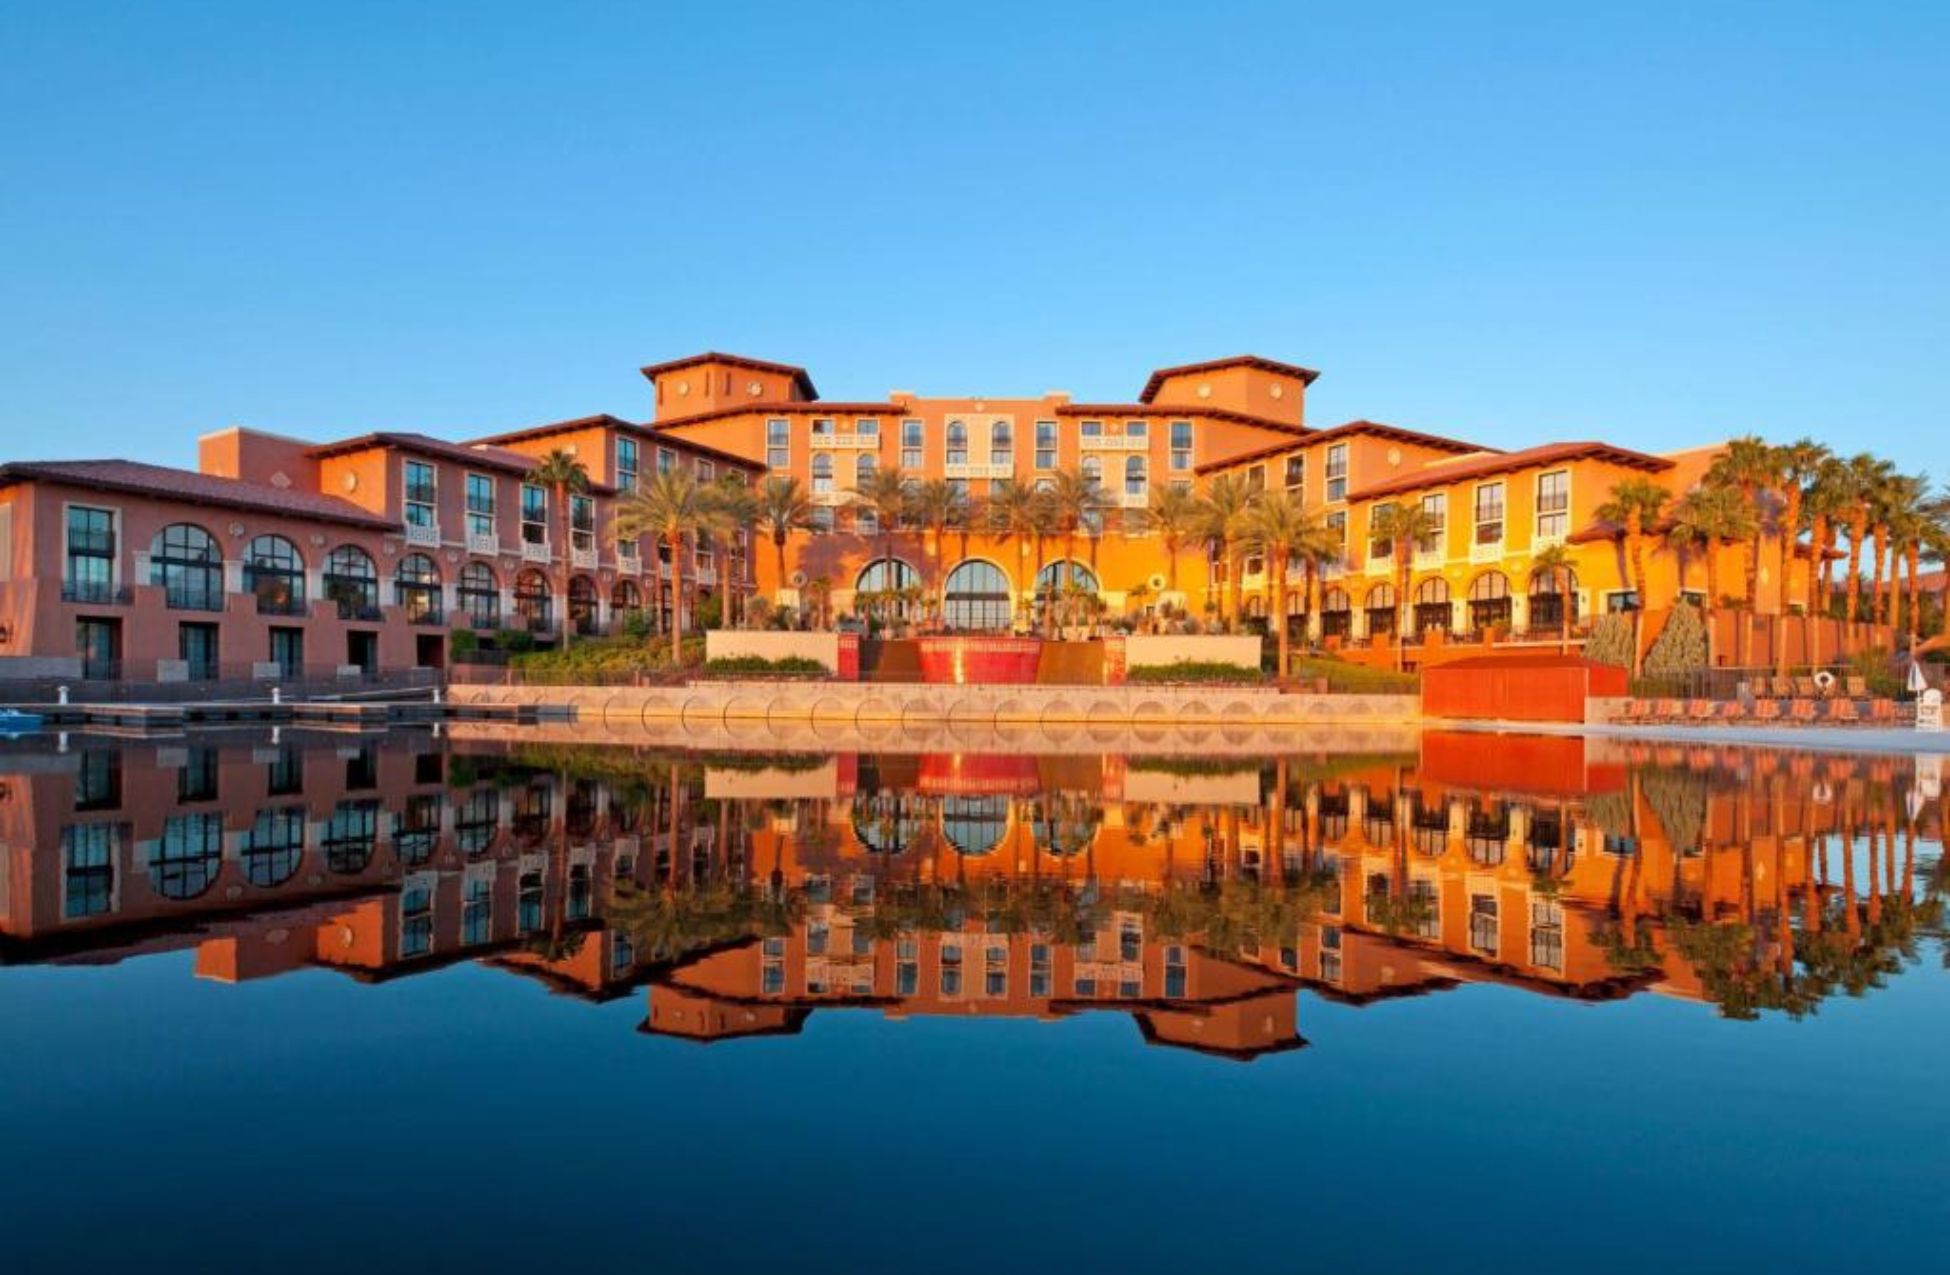 The Westin Lake Las Vegas - Best Hotels In Las Vegas